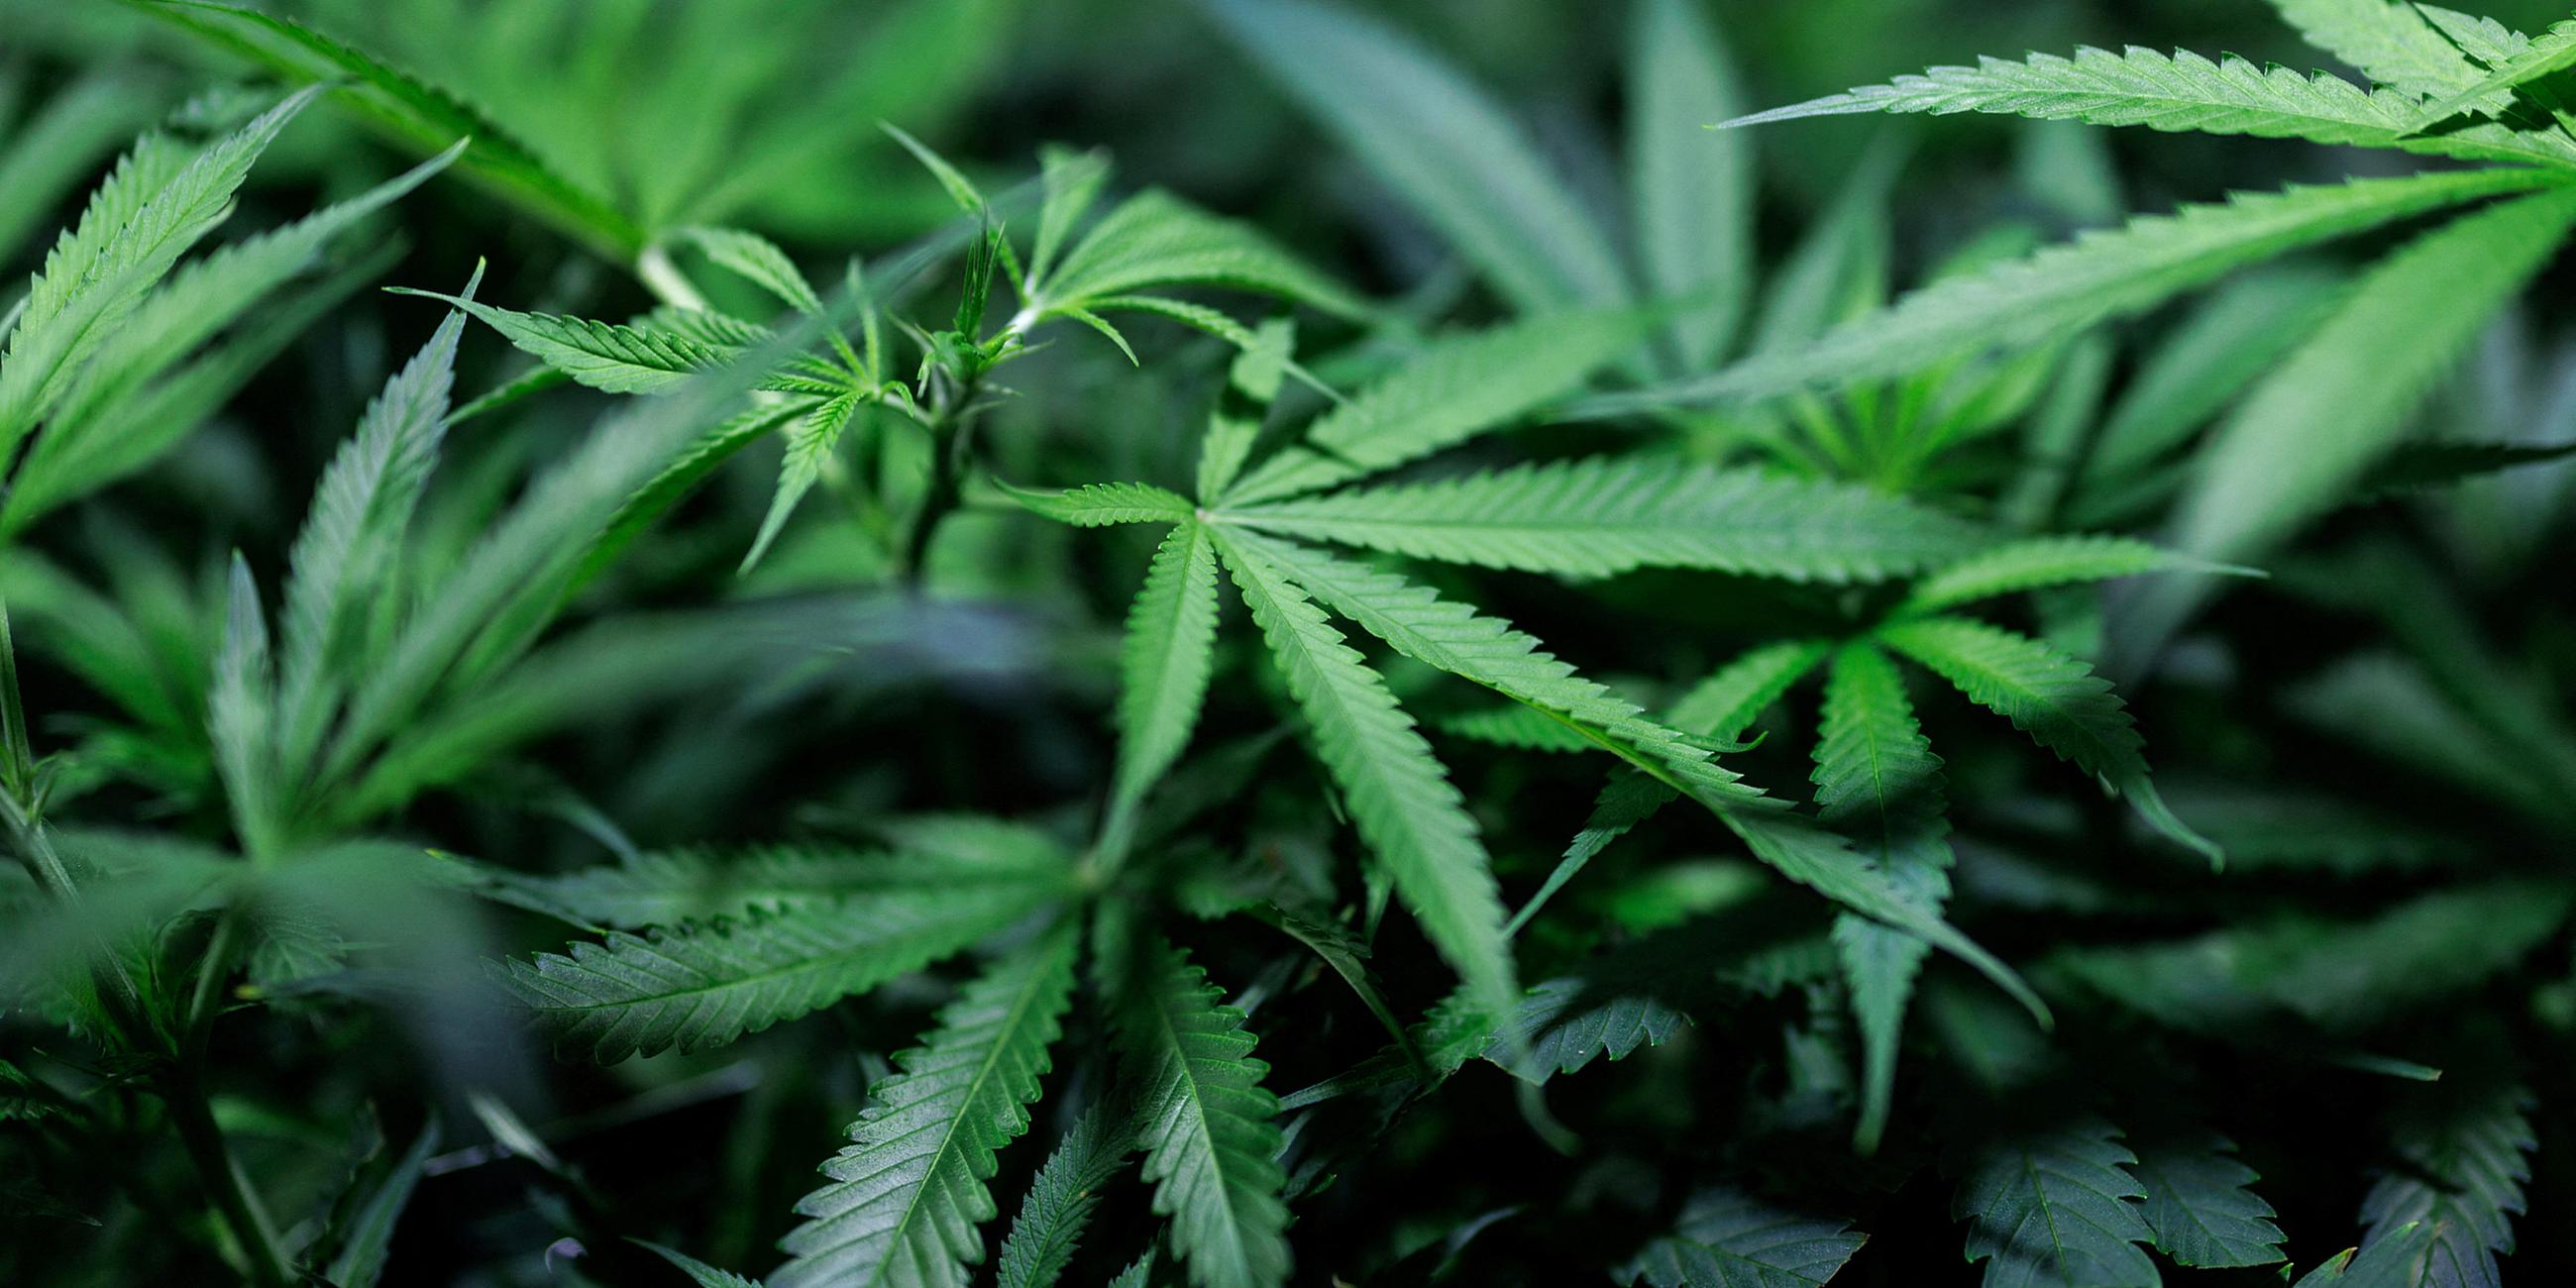 Cannabispflanzen wachsen im Klonraum eines Hersteller von medizinischen Cannabisprodukten